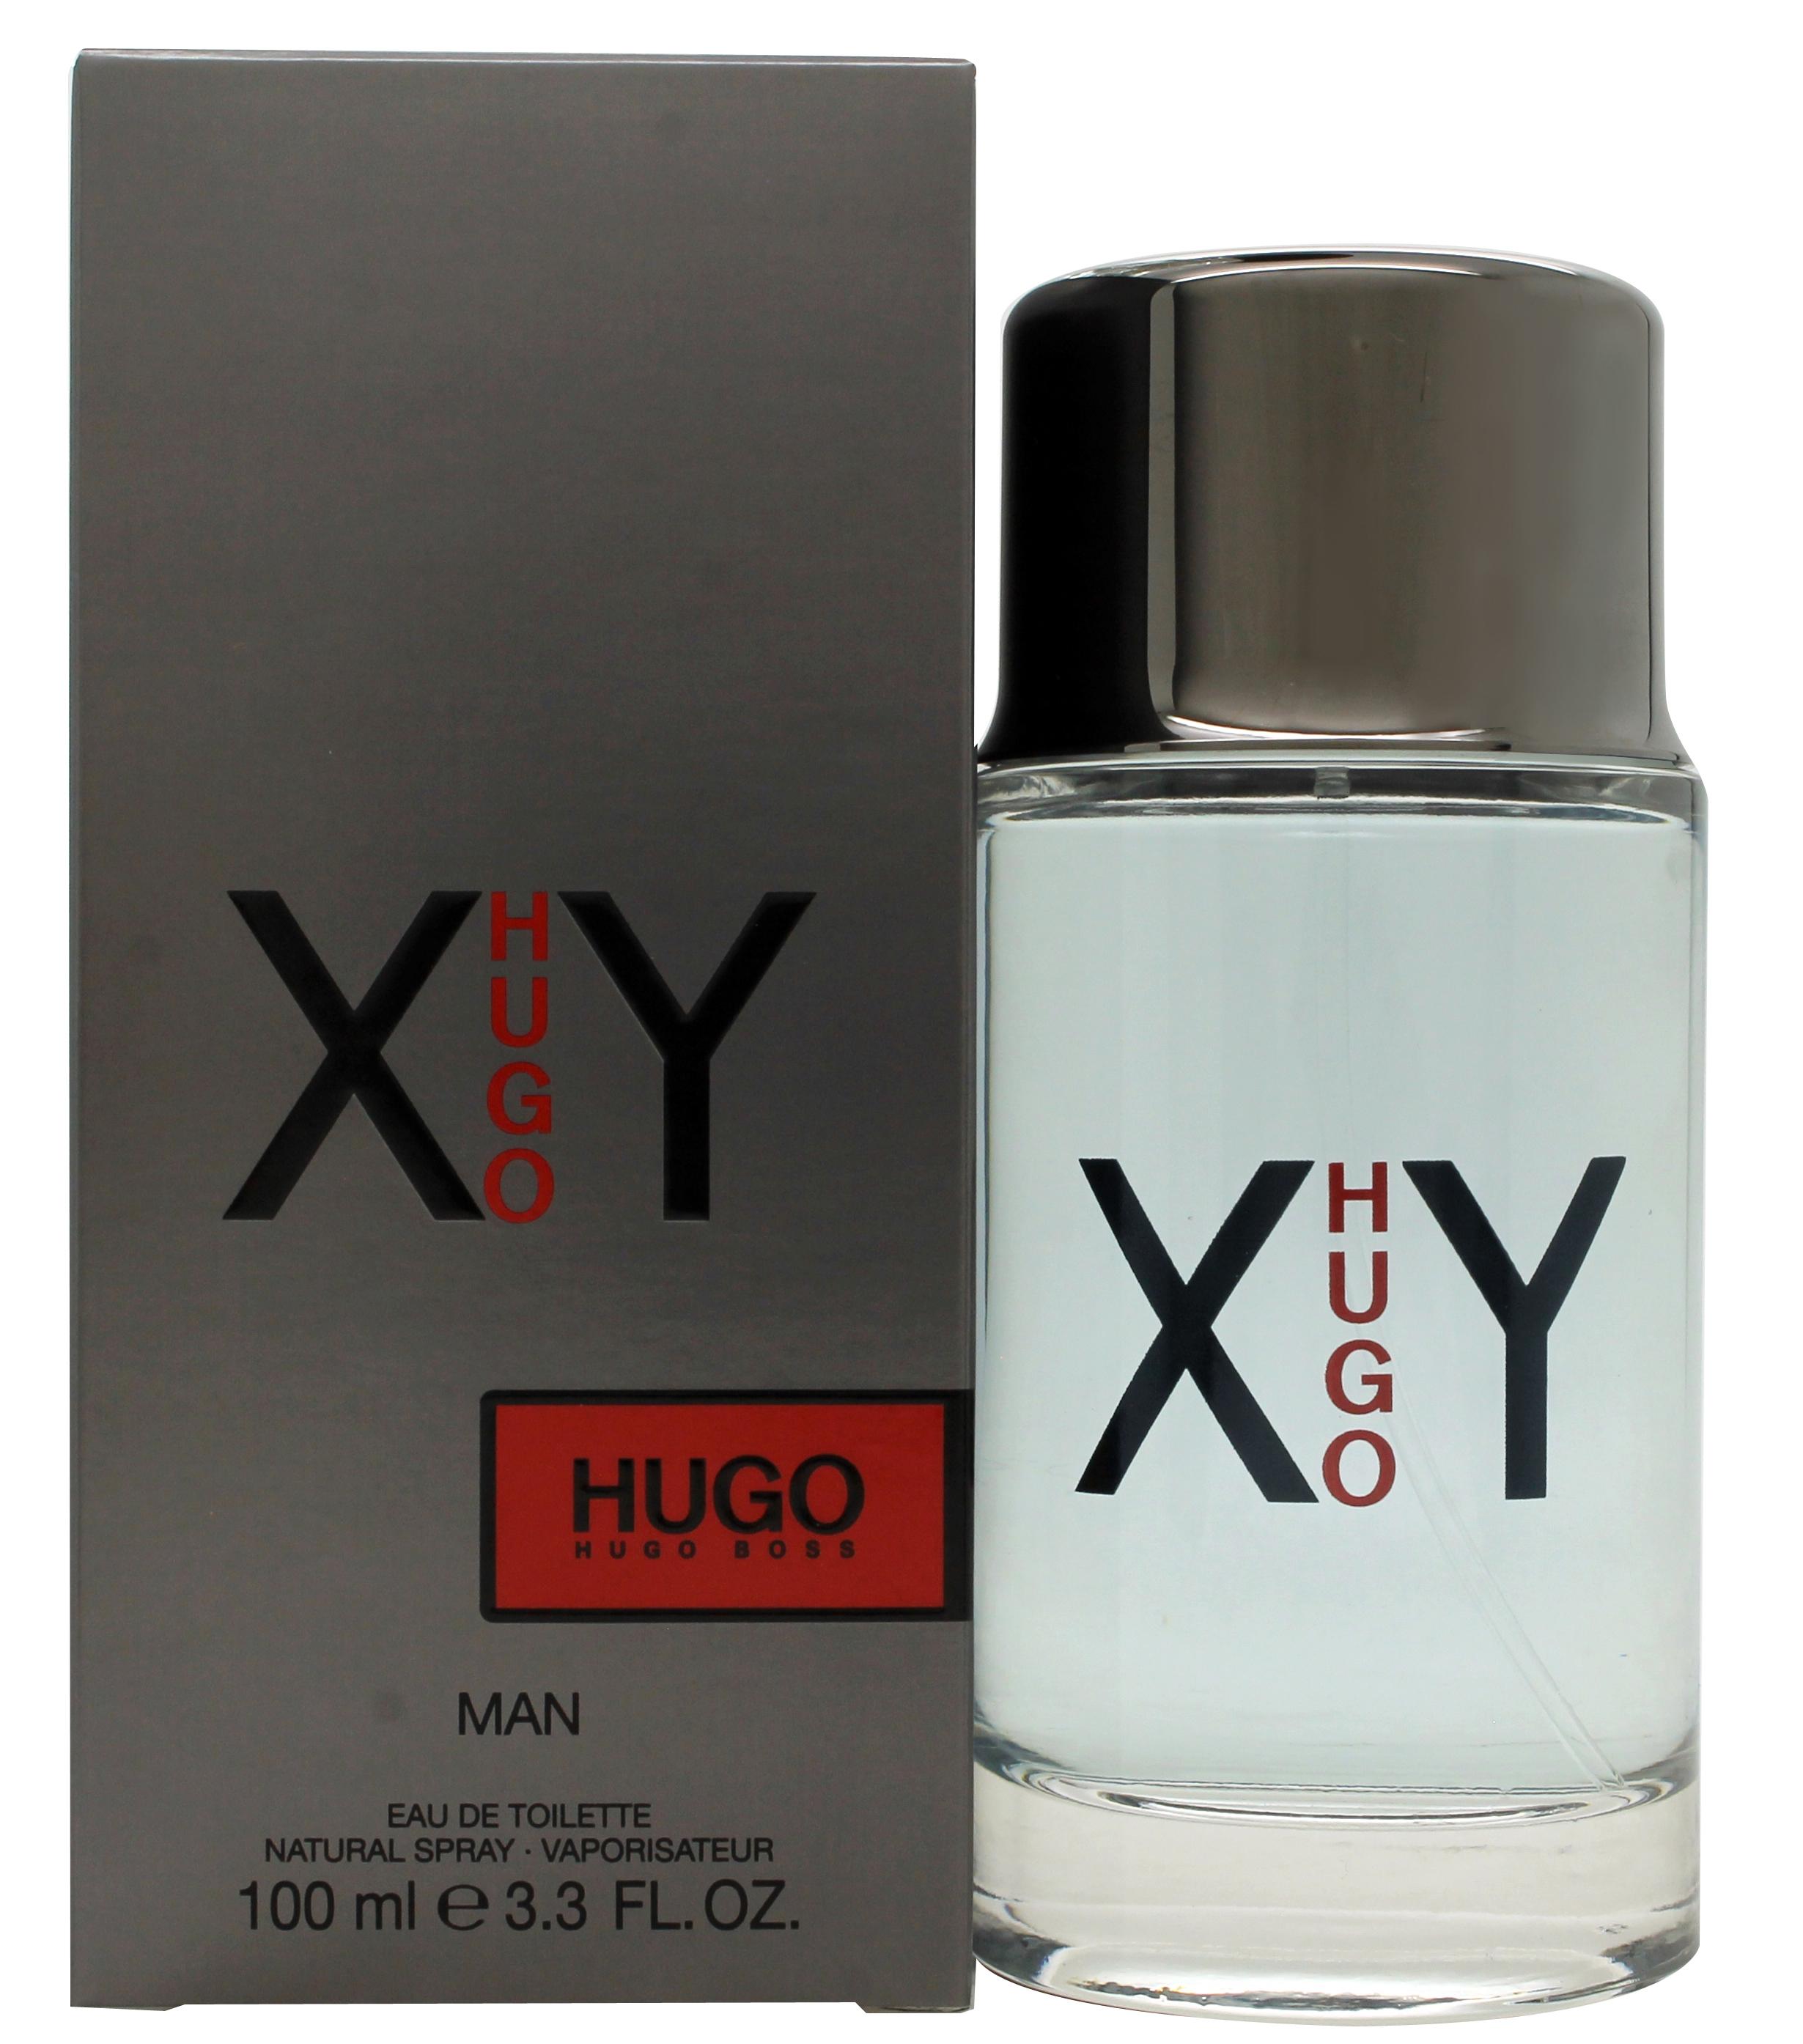 Hugo Boss XY Eau de Toilette 100ml Spray